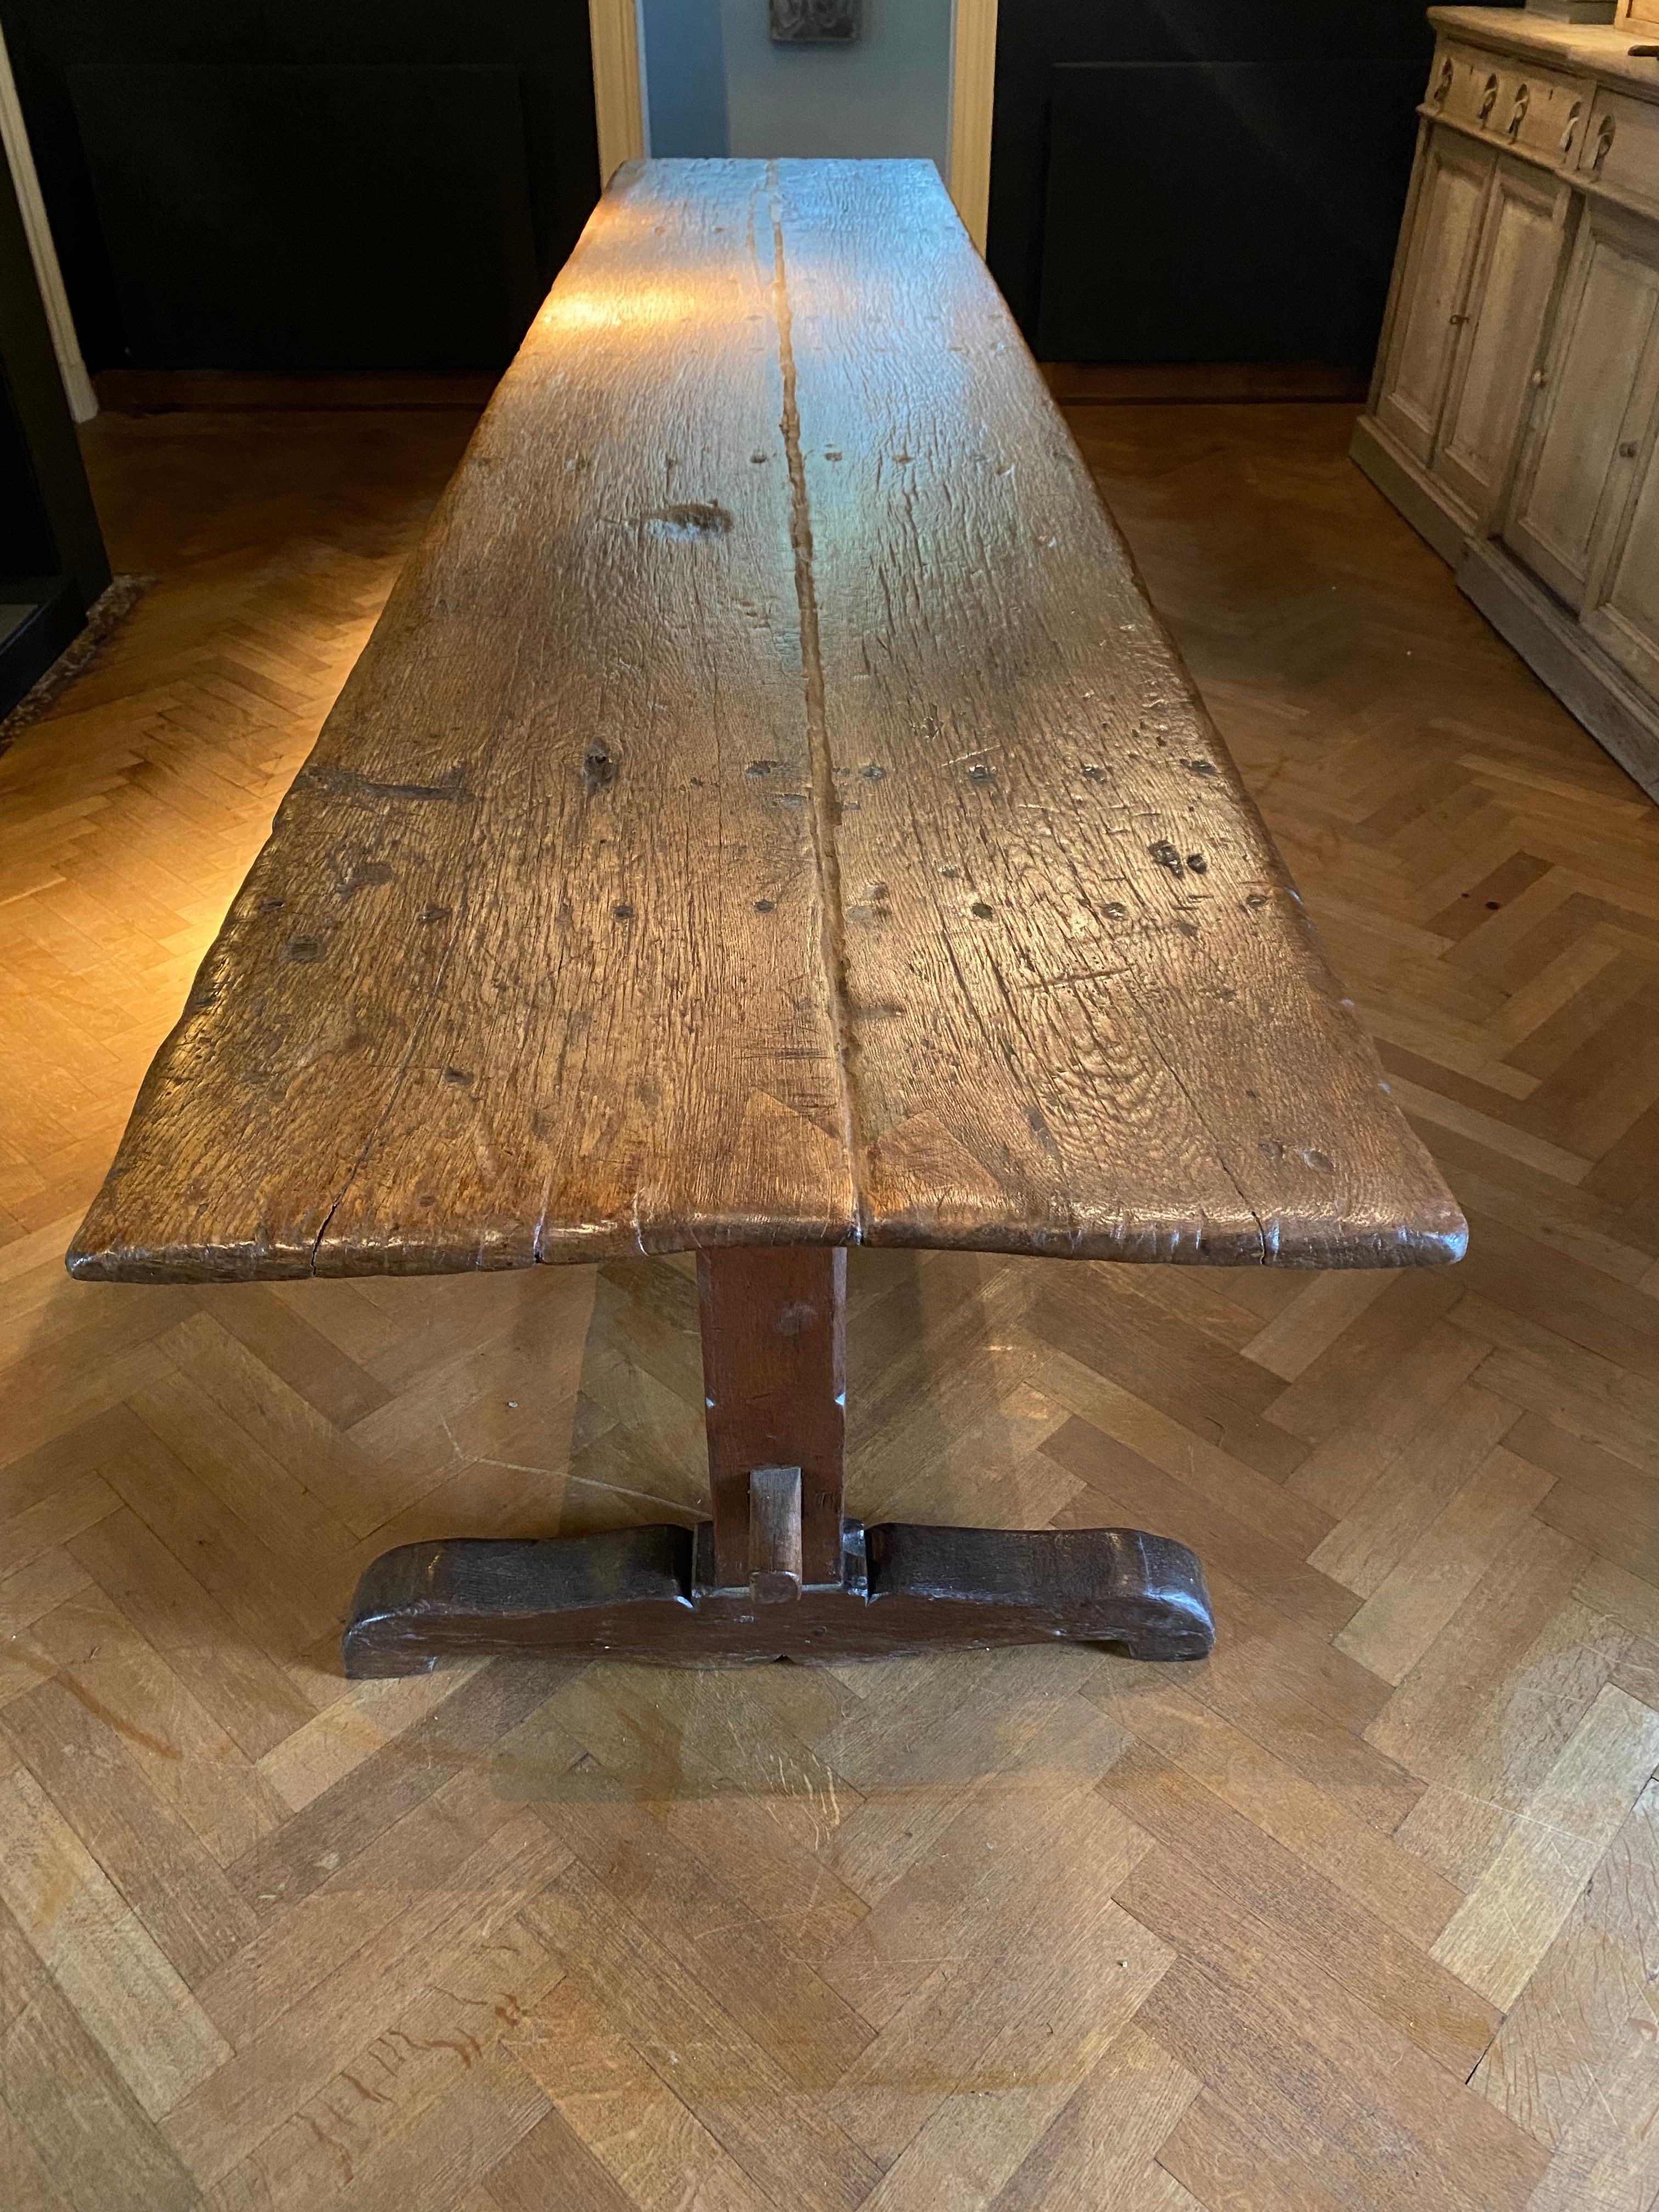 Außergewöhnlicher brutalistischer, antiker Klostertisch aus Italien,
Region Toskana, Ende des 18. Jahrhunderts,
der Tisch hat eine schöne alte Patina und Glanz der Eiche,
die 3 Beine haben eine braune Patina,
sehr eleganter und dekorativer